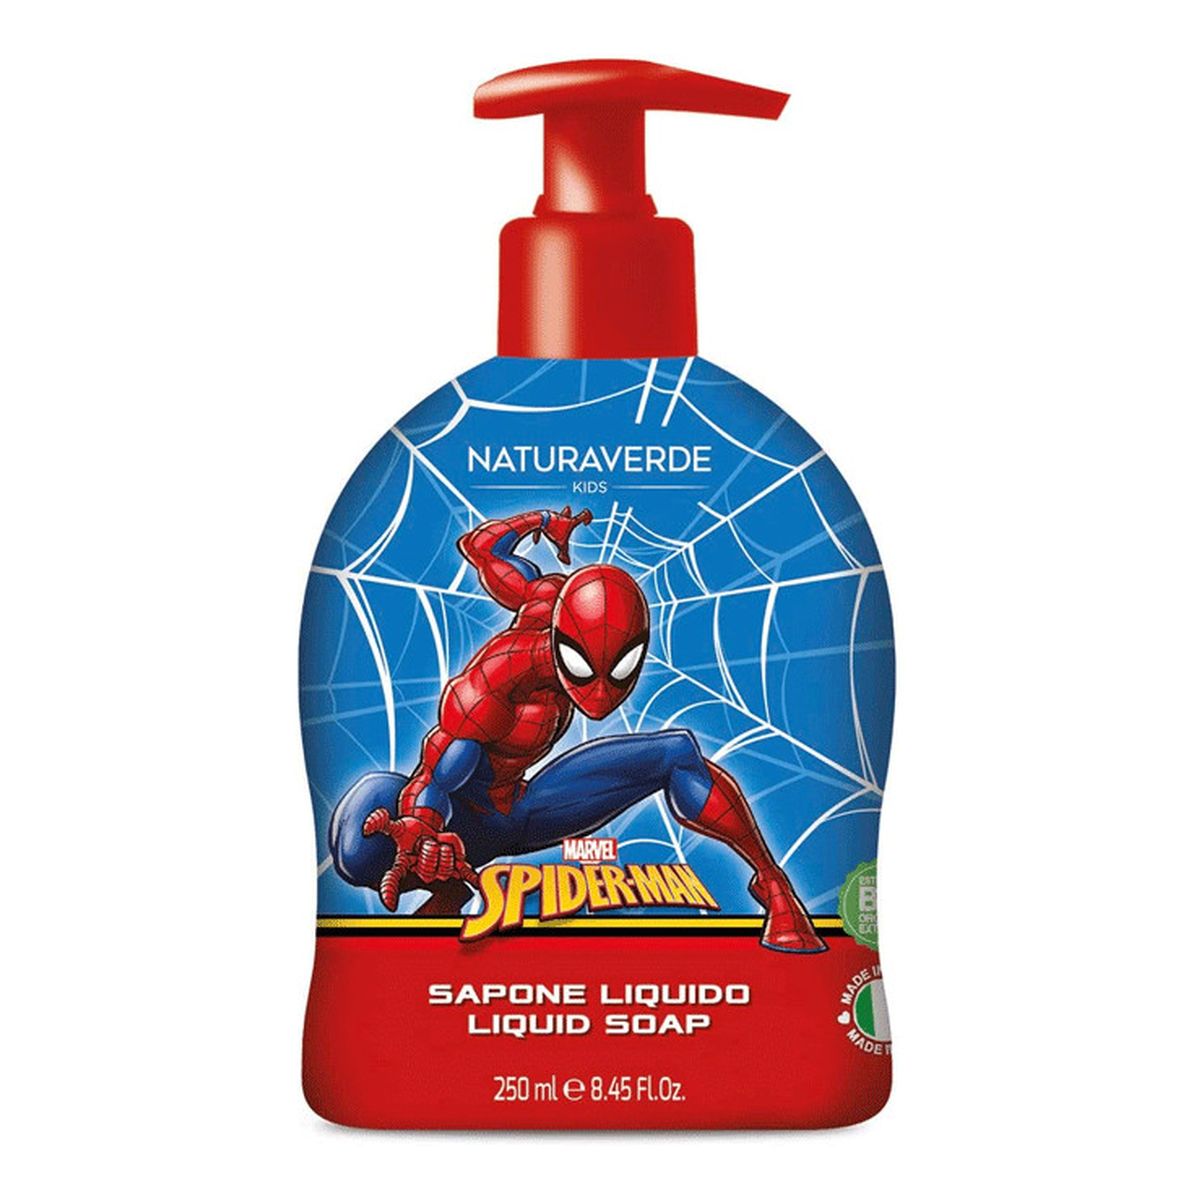 Naturaverde Kids Spiderman Mydło w płynie 250ml